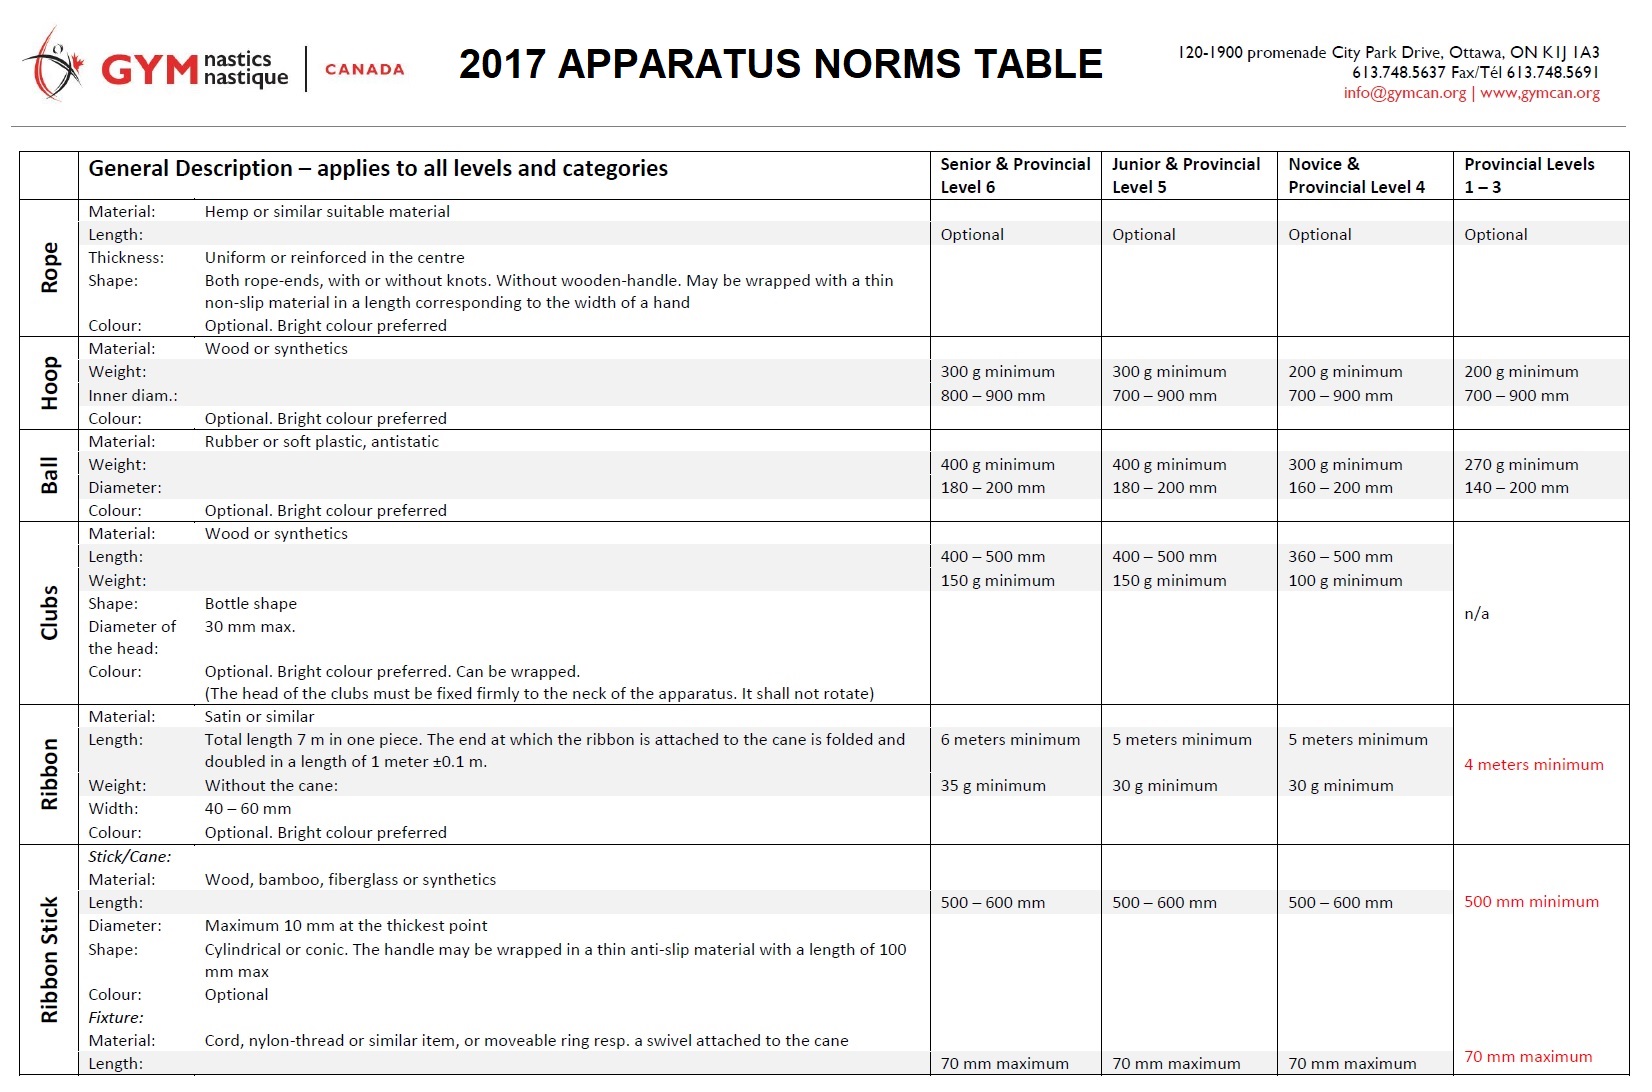 GCG_Apparatus Norms Table_2017_1